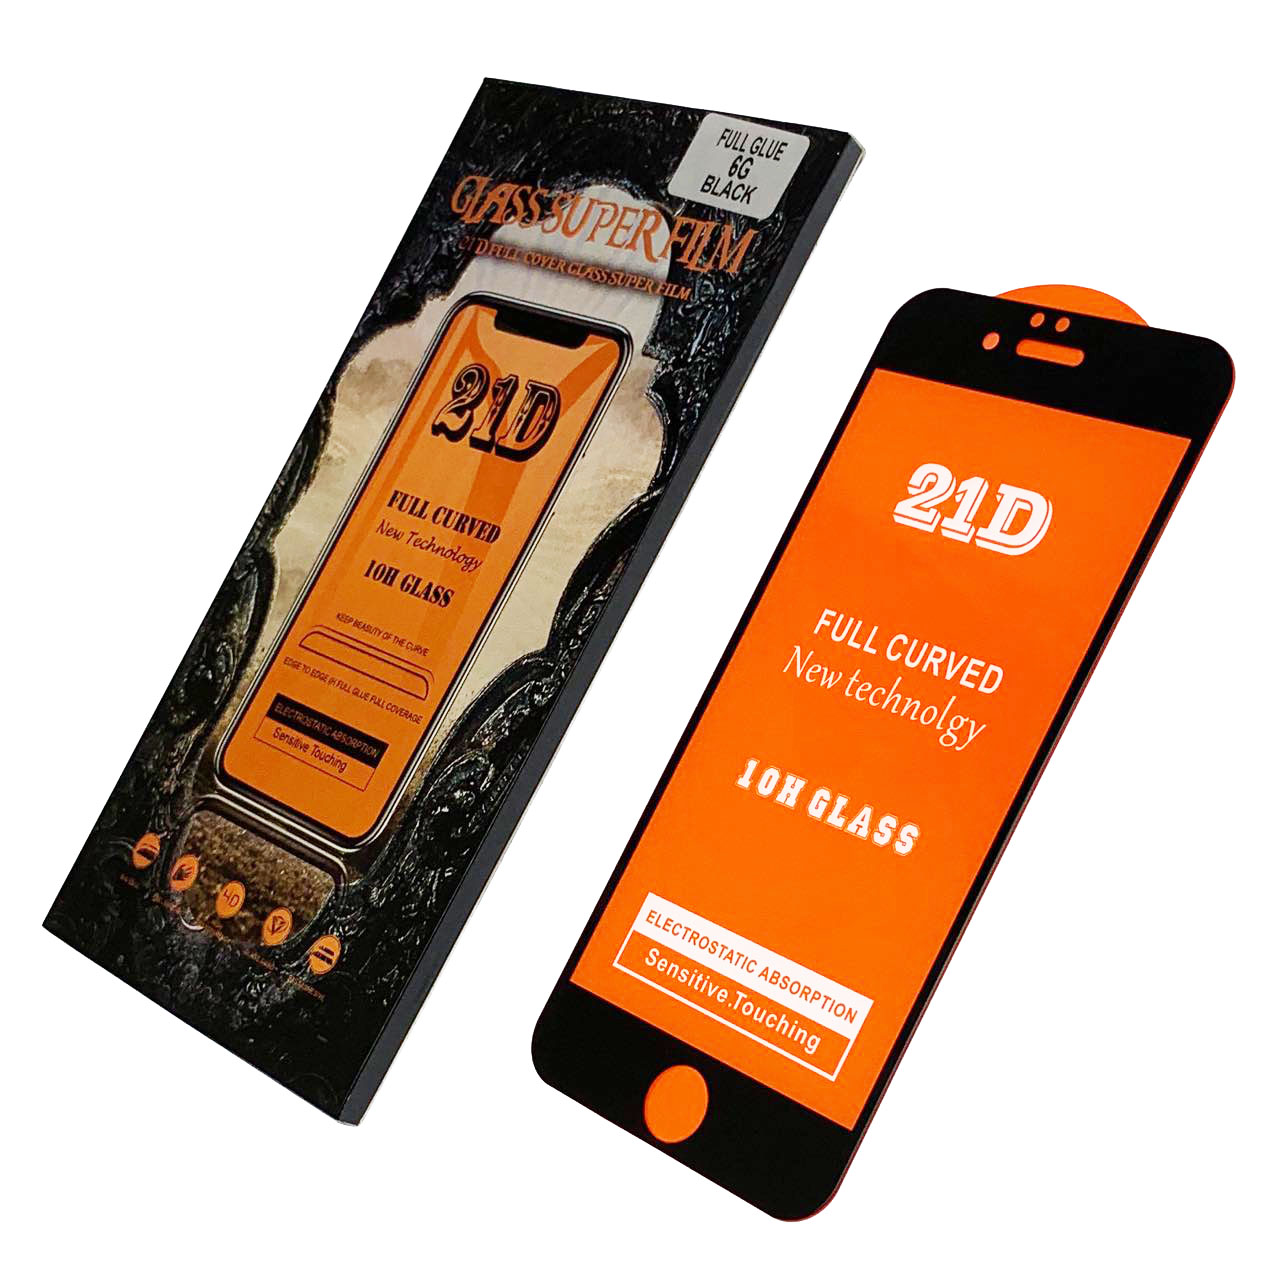 Защитное стекло 21D для APPLE iPhone 6, iPhone 6G, iPhone 6S (4.7"), цвет окантовки черный